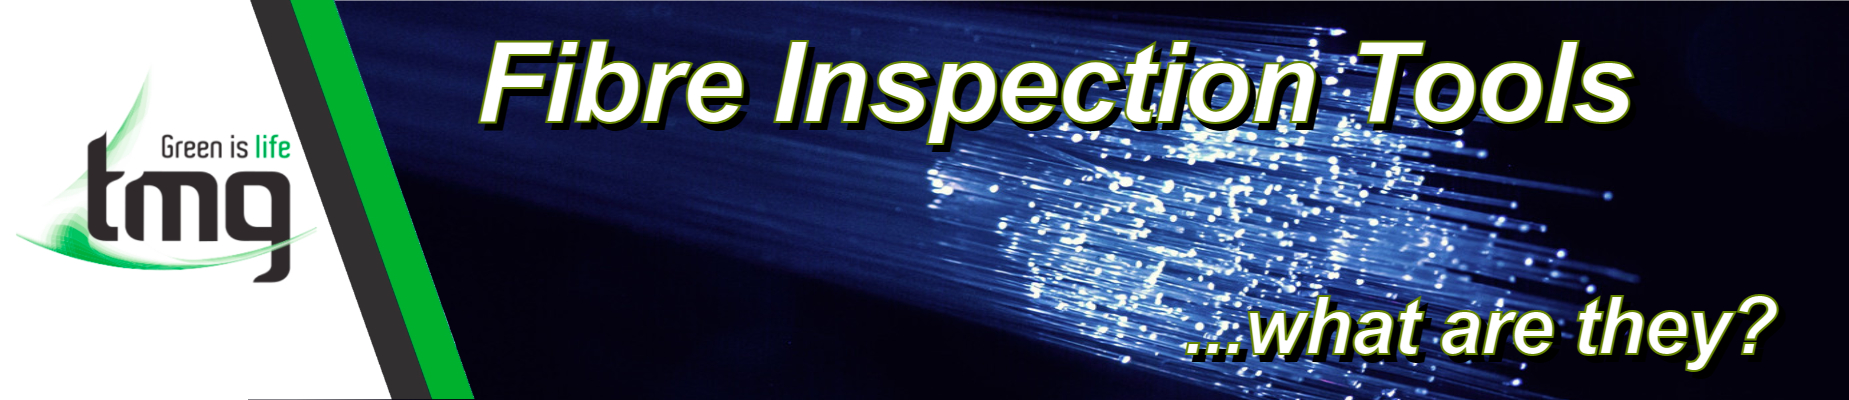 Fibre Inspection Tools